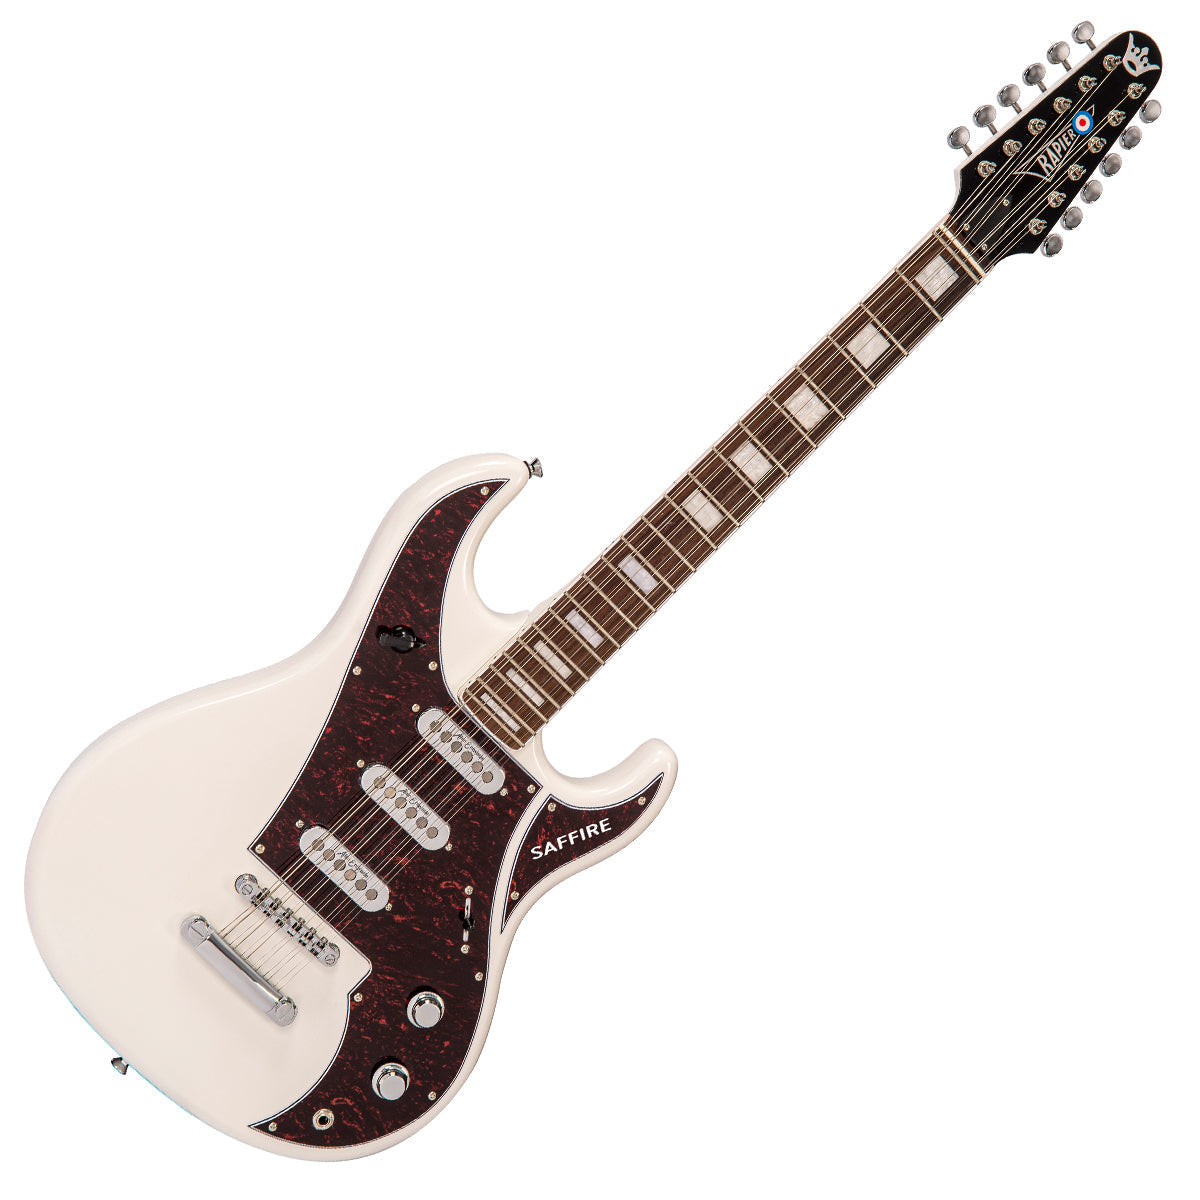 Rapier Saffire 12 String Electric Guitar ~ Vintage White, Electric Guitar for sale at Richards Guitars.